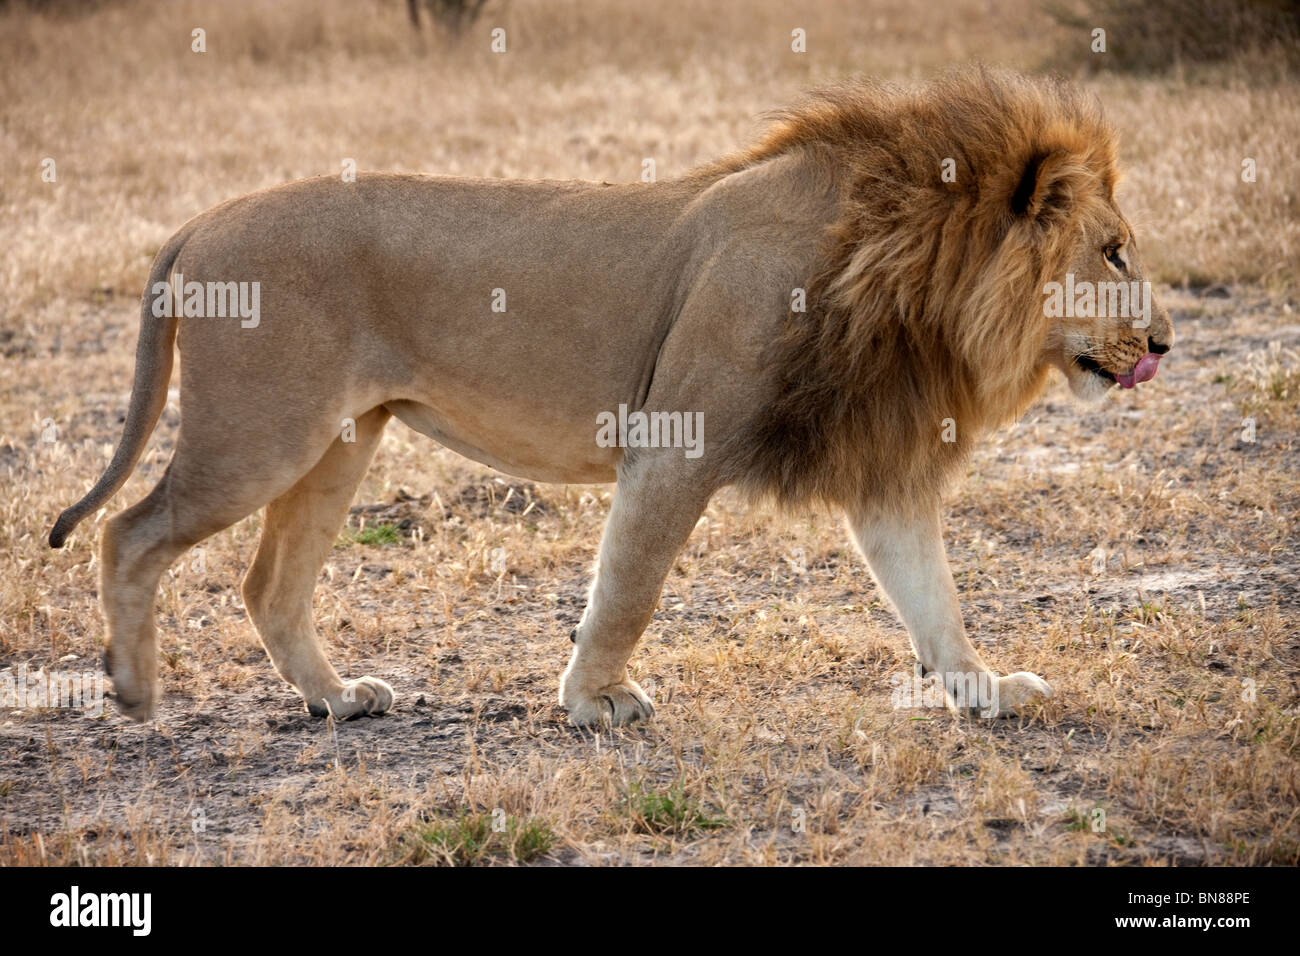 A male Lion (Panthera leo) in the Savuti region of northern Botswana. Stock Photo